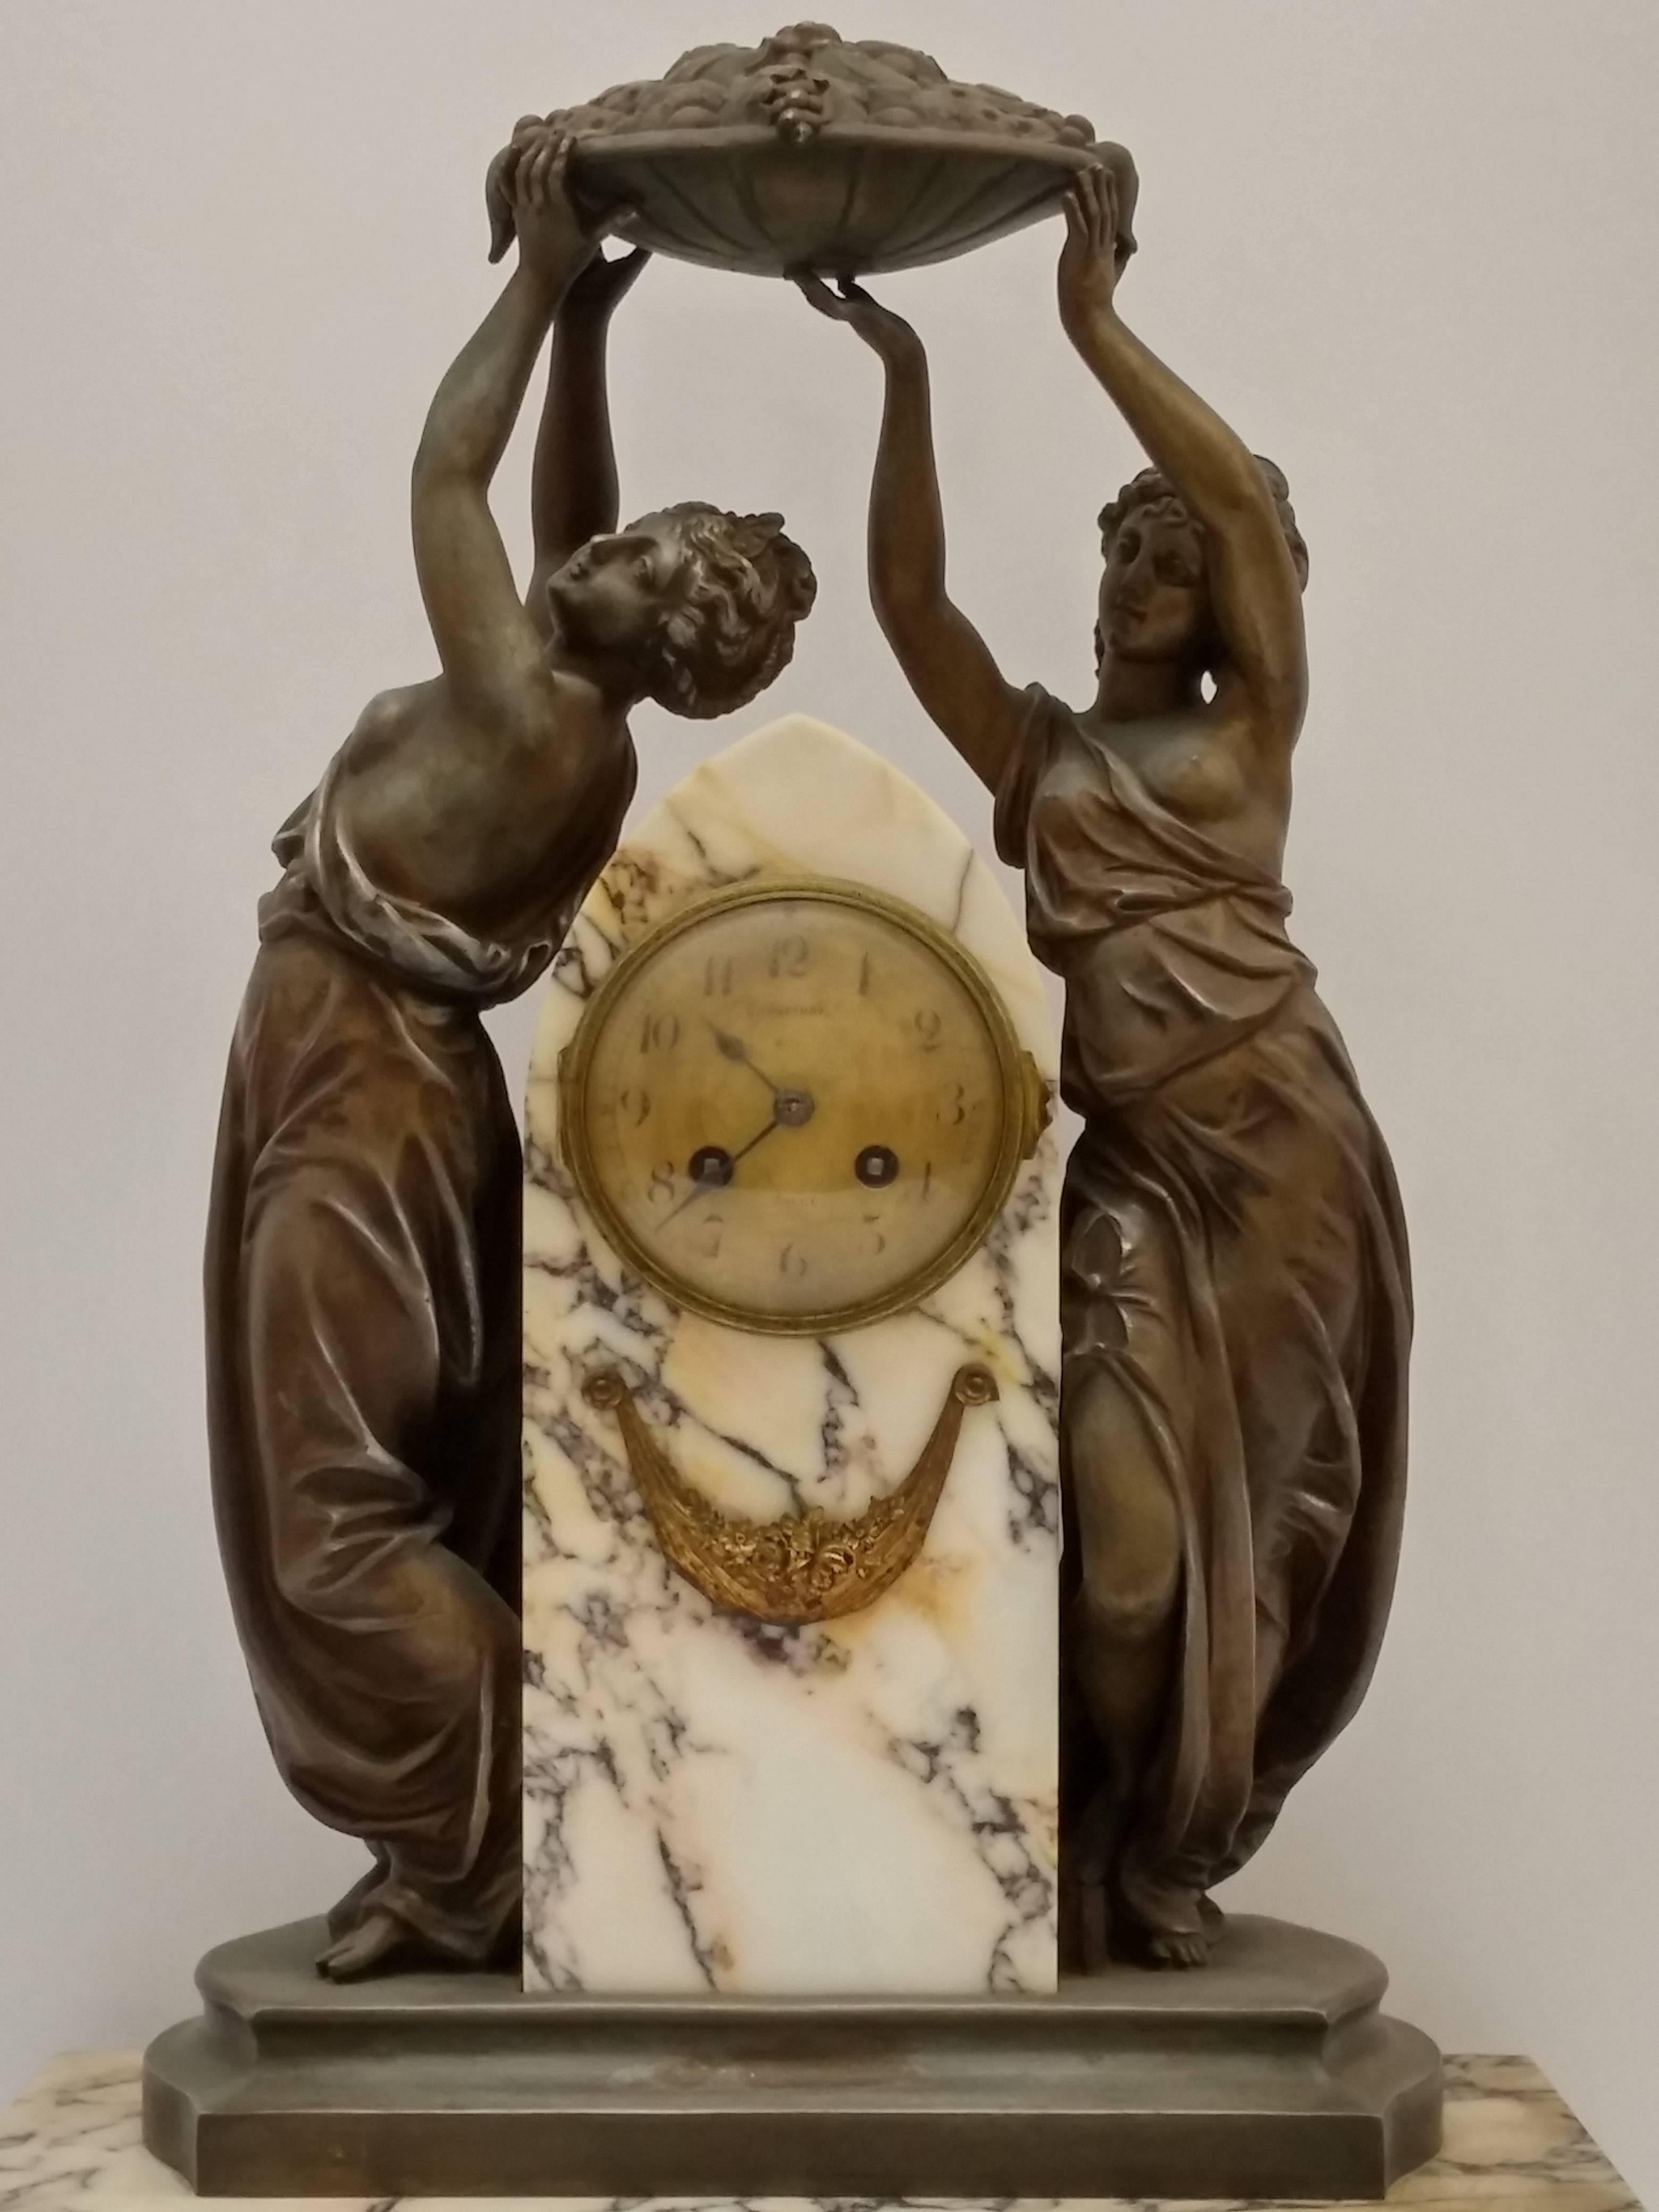 Französische Jugendstilskulptur mit einer Uhr, die ein Frauenpaar zeigt, das sich über die Ernte der Saison freut. In sehr gutem Zustand. Verkauft wie es ist in Bezug auf die Bewegung. Kostenlose Abholung im Dreistaatengebiet. Wir sind die seltene